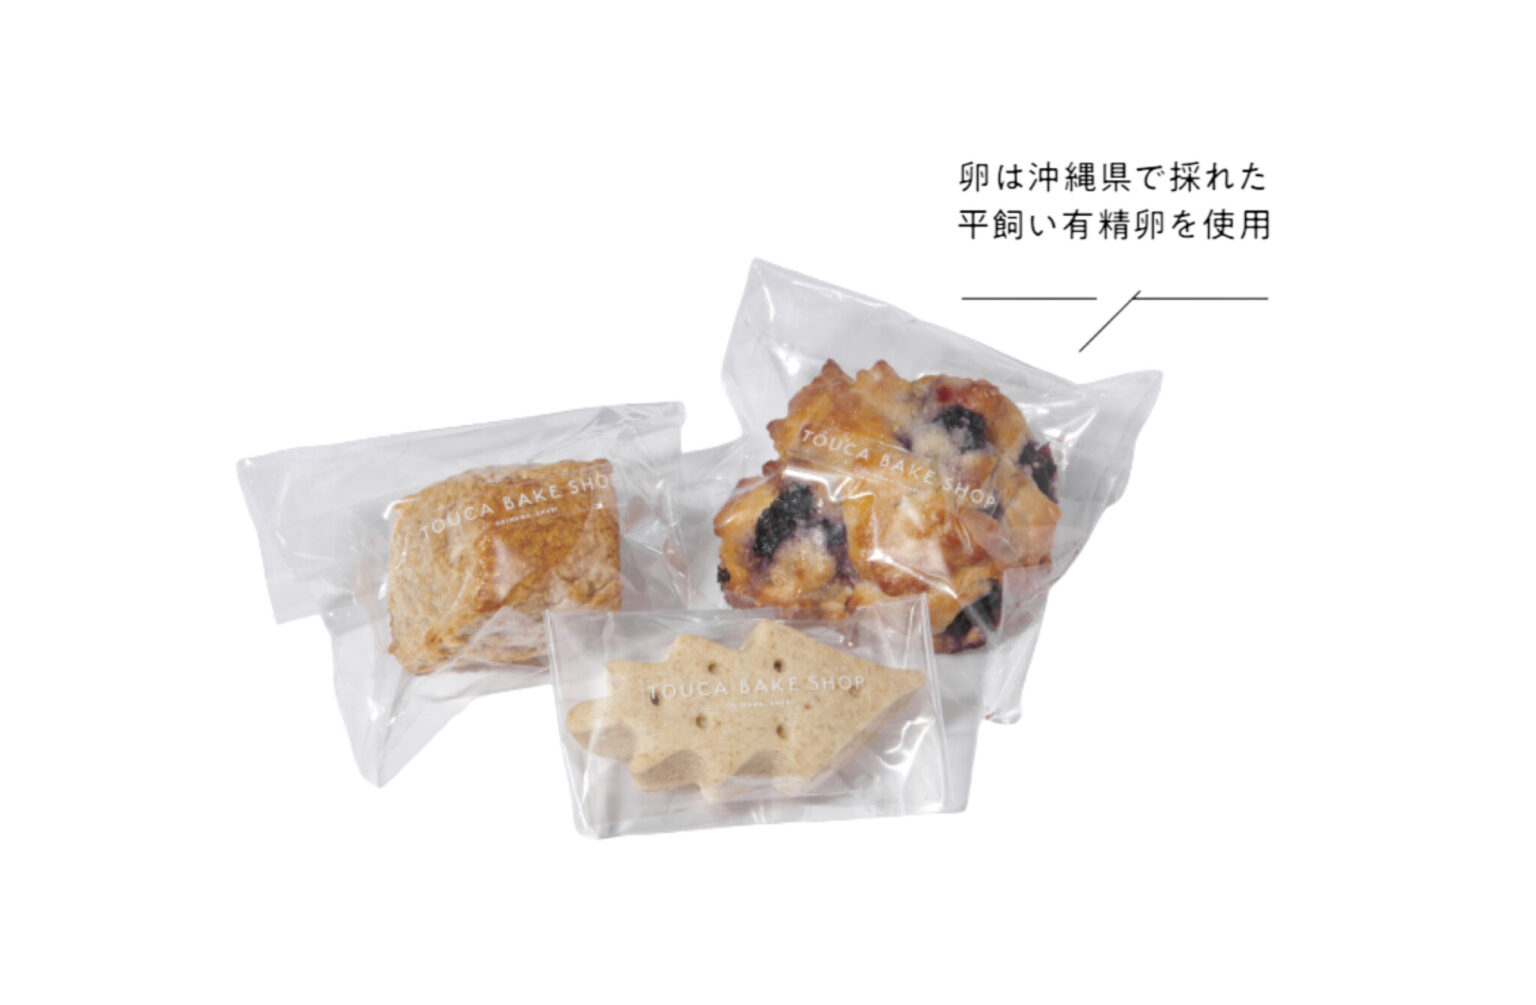 〈TOUCA BAKE SHOP〉の焼菓子。沖縄の素材を中心に、シンプルな焼菓子を提案している。左から、「伊江島産全粒粉のスコーン」200円、「ショートブレッド」180円、「ブルーベリーとクリームチーズのスコーン」350円。首里の店舗にて販売中。